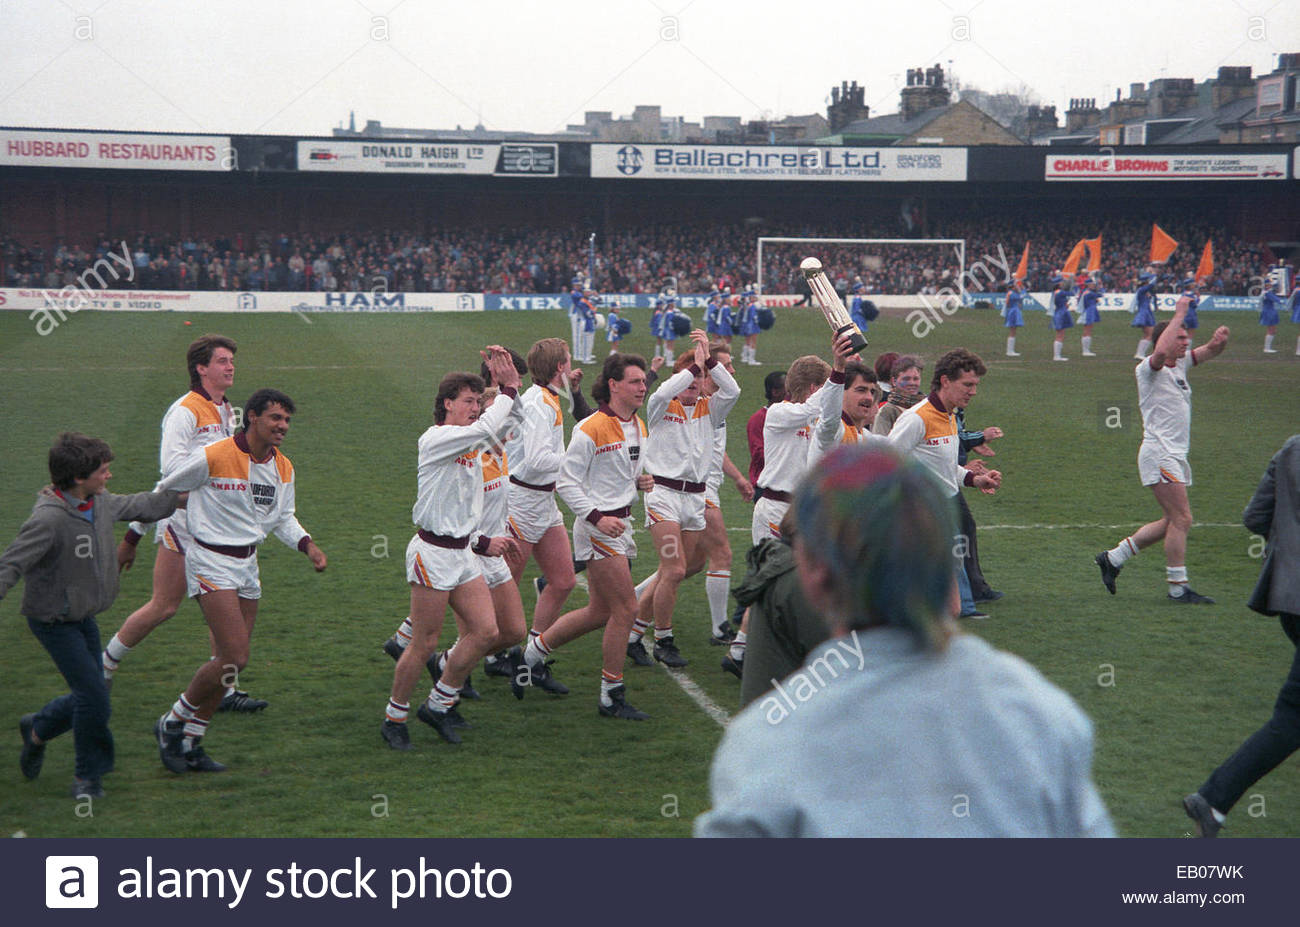 Η 11η Μαΐου του 1985 θα ήταν μία μεγάλη γιορτή για το Μπράντφορντ. Κατέληξε σε μία από τις τραγωδίες στην ιστορία του παγκοσμίου ποδοσφαίρου. 